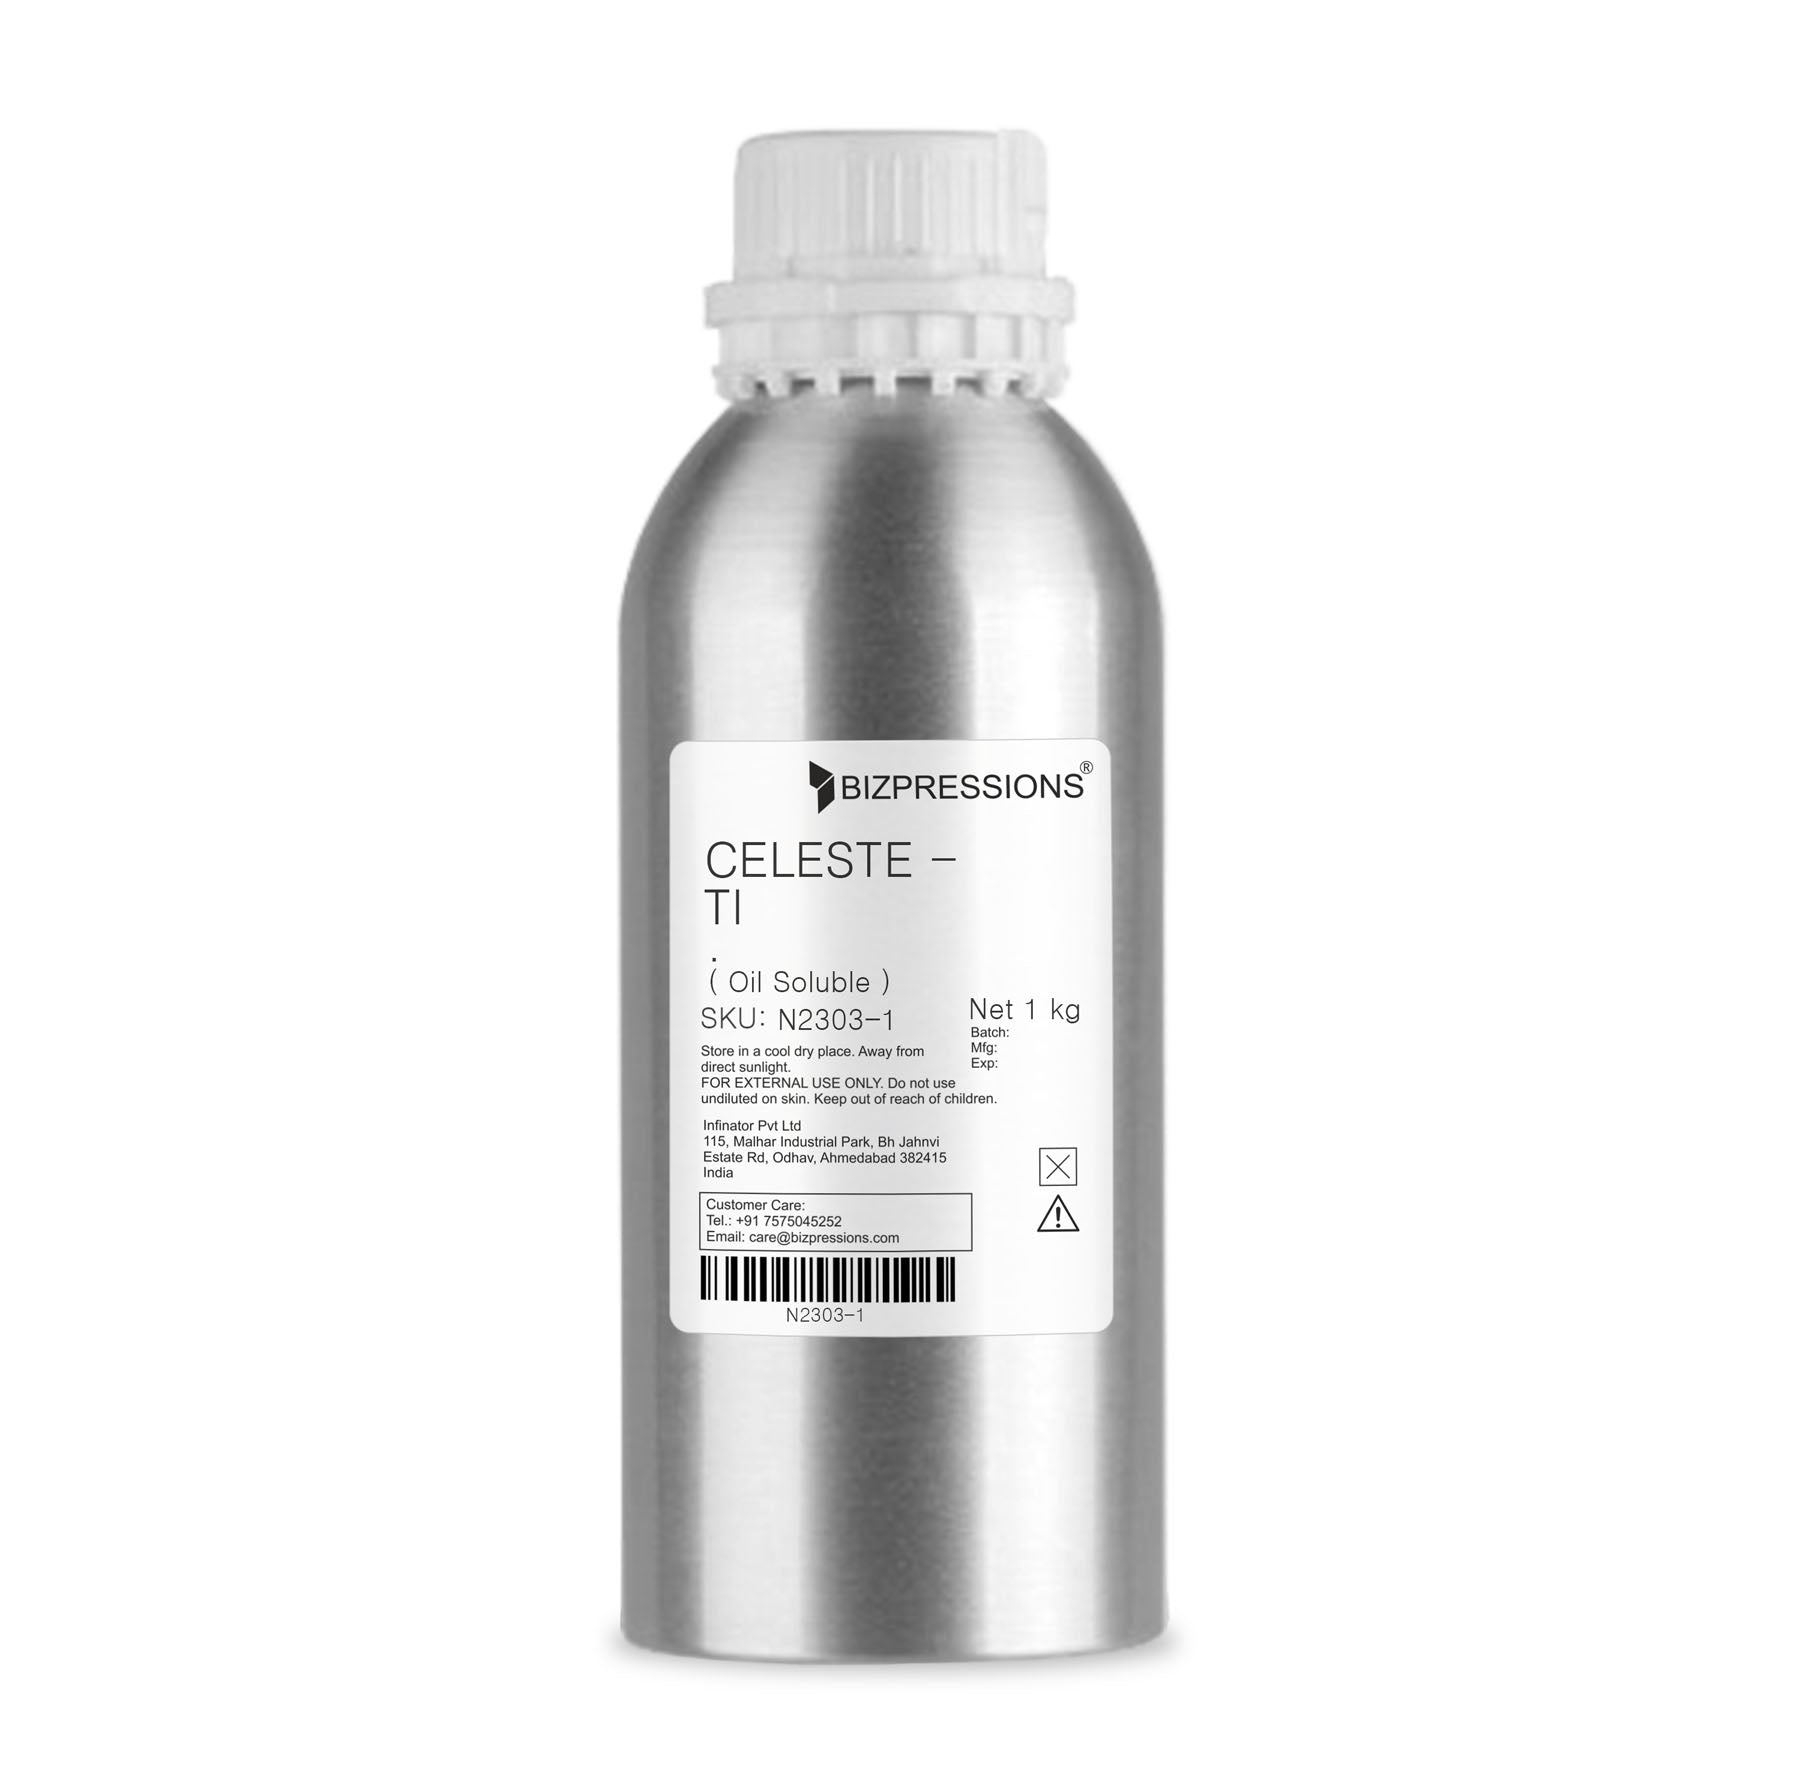 CELESTE - TI - Fragrance ( Oil Soluble ) - 1 kg